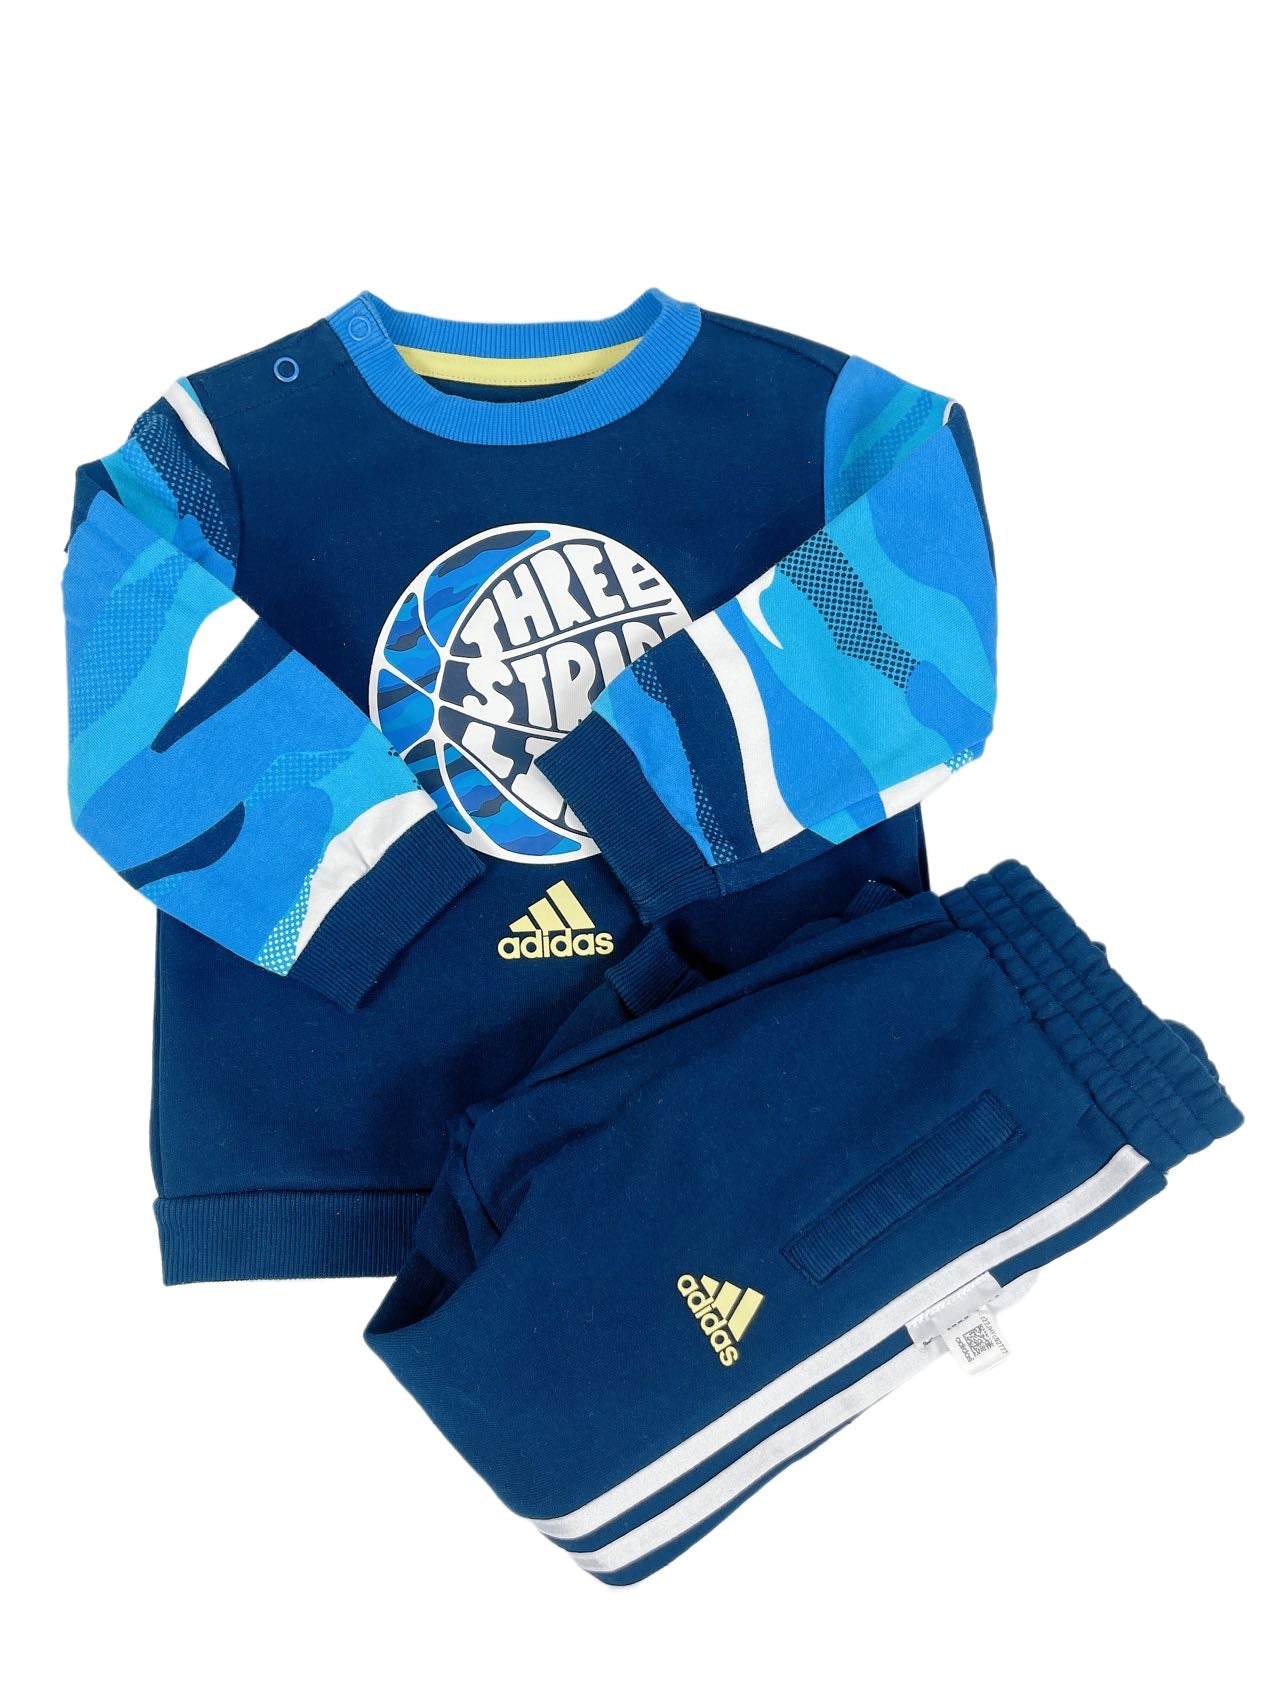 Adidas Boy Sprots Wear Set(2Y)